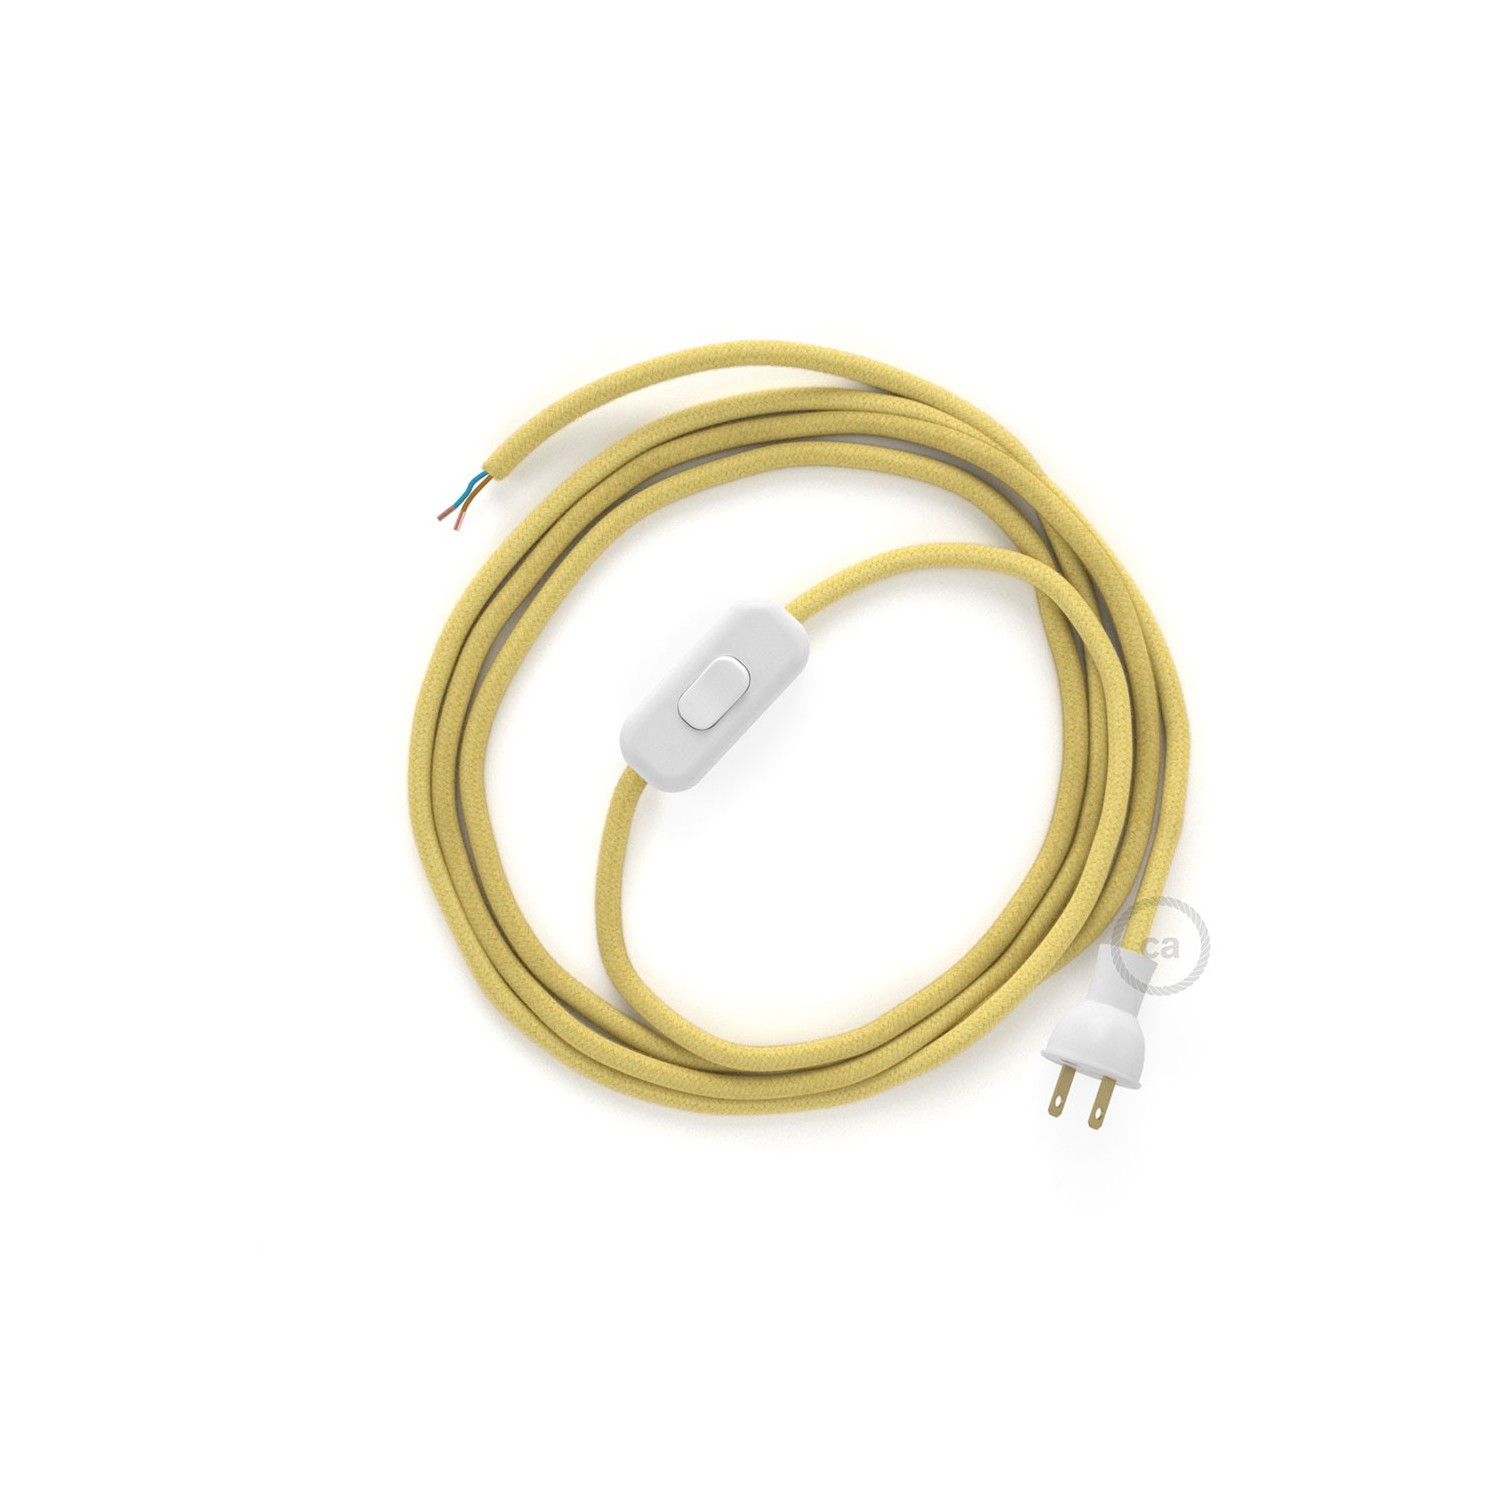 Cableado para lámpara de mesa, cable RC10 Algodón Amarillo Pastel 1,8 m. Elige el color de la clavija y del interruptor!